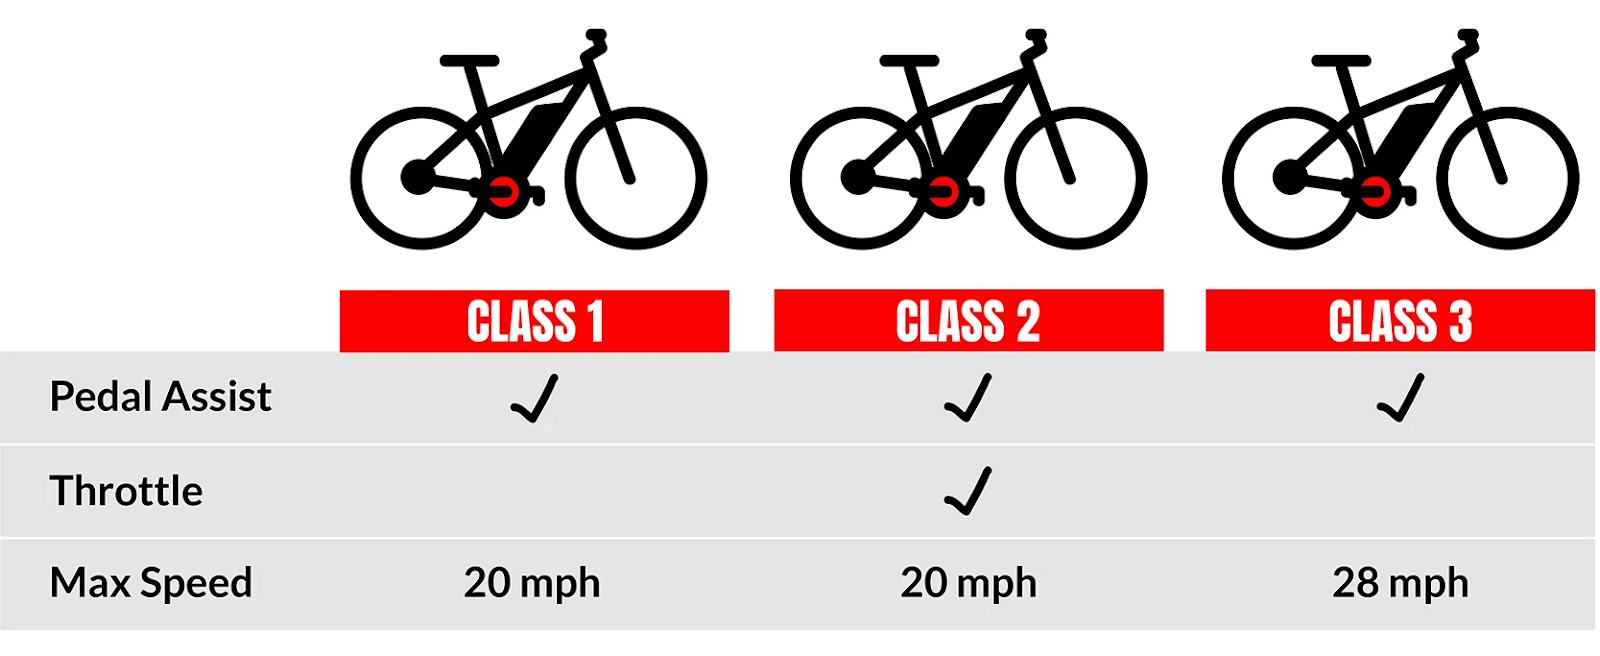 E-bike Classes Explained